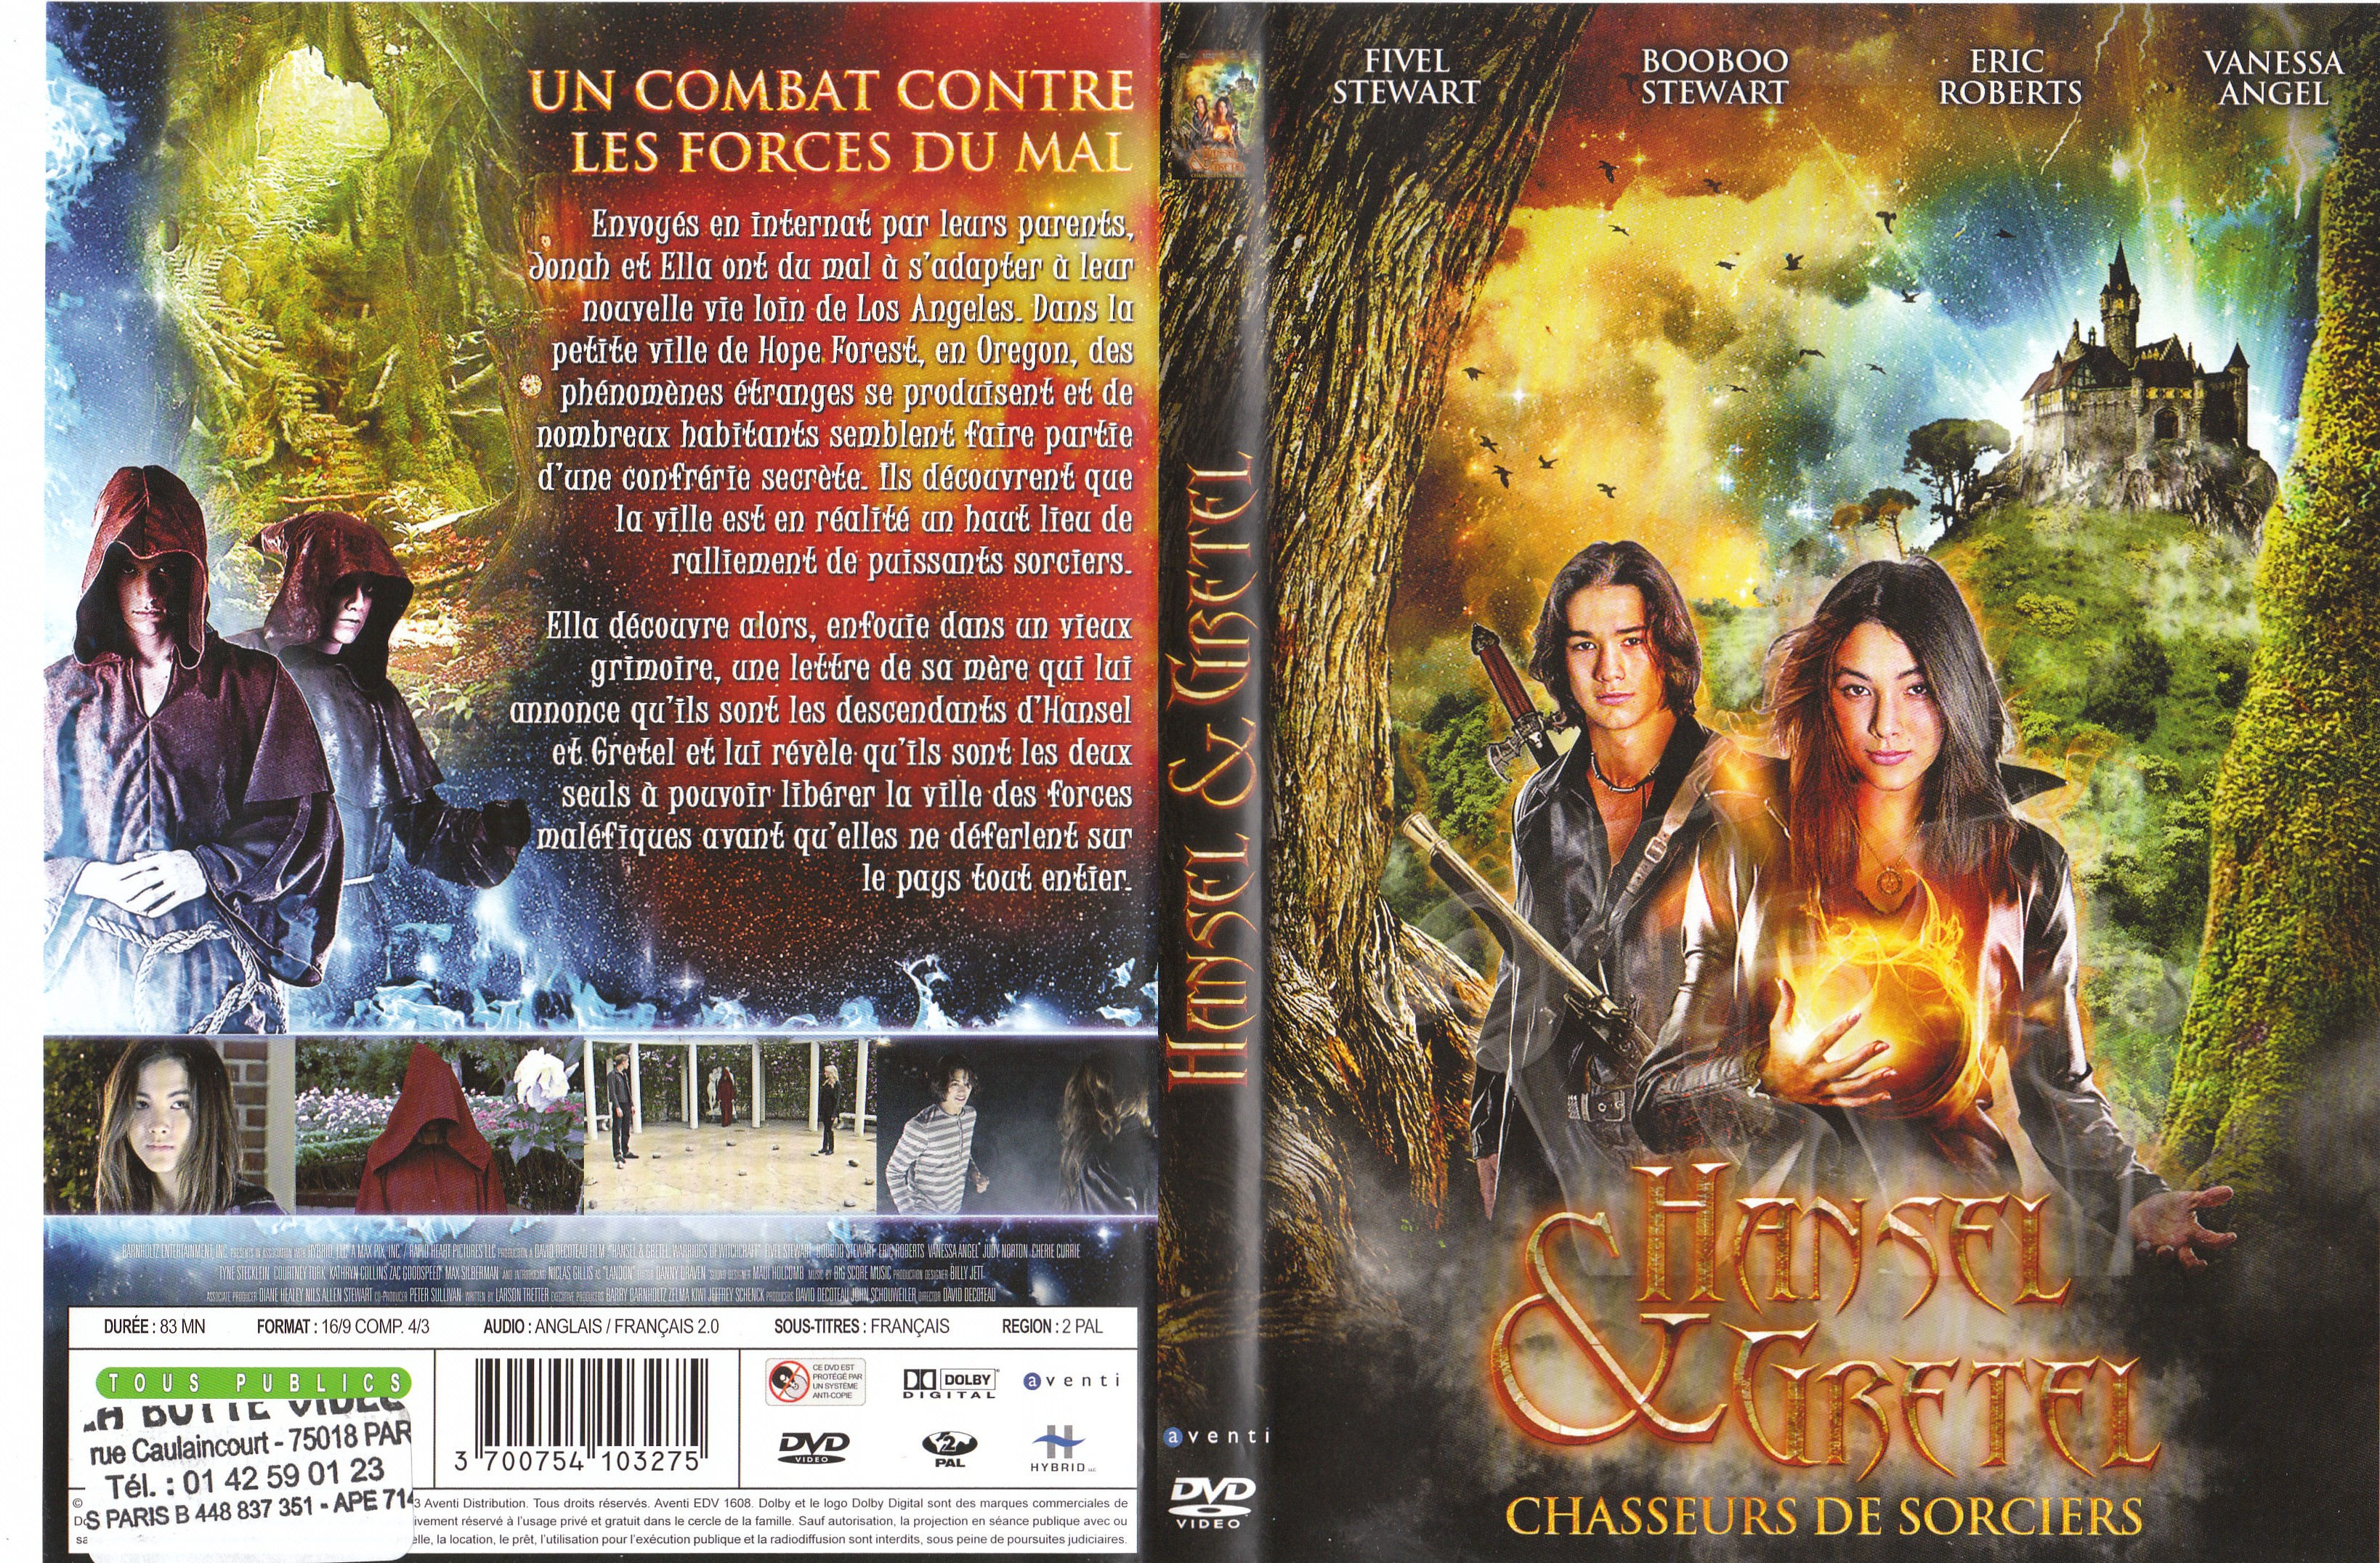 Jaquette DVD Hansel et Gretel Chasseurs de sorciers